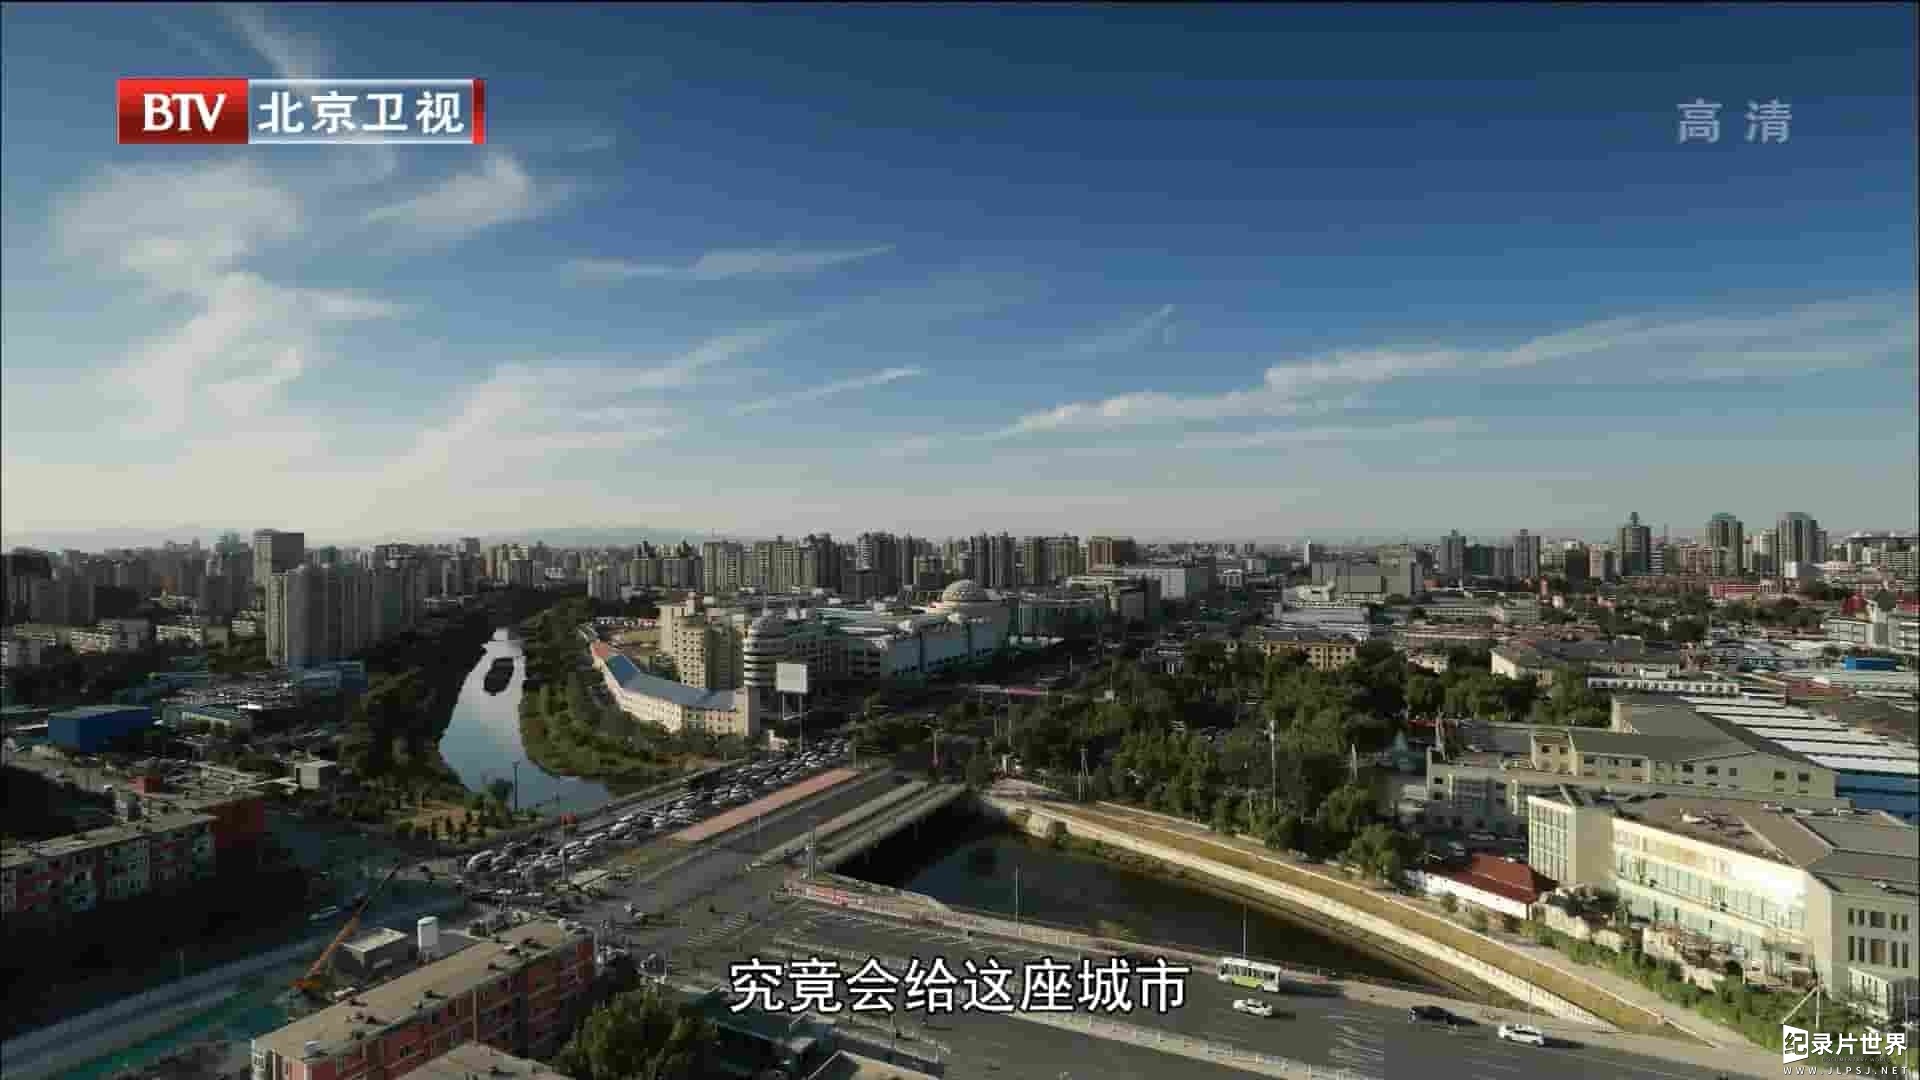 BTV纪录片《我的新北京 2017》全6集